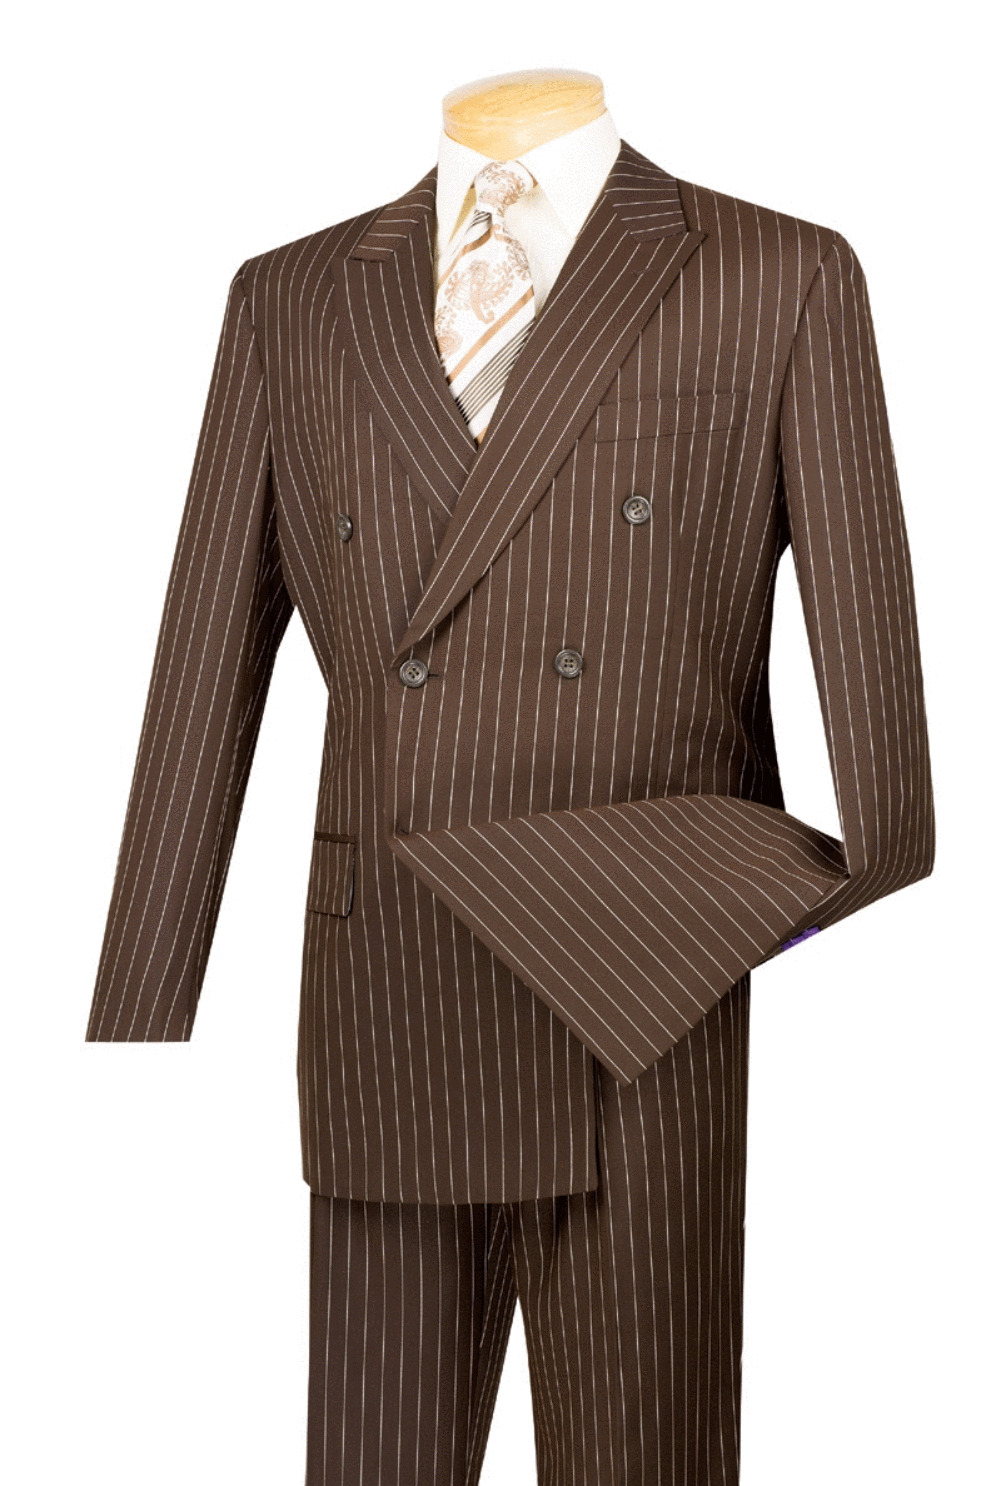 Men's Stripe Suits, Pinstripe Suits for Men